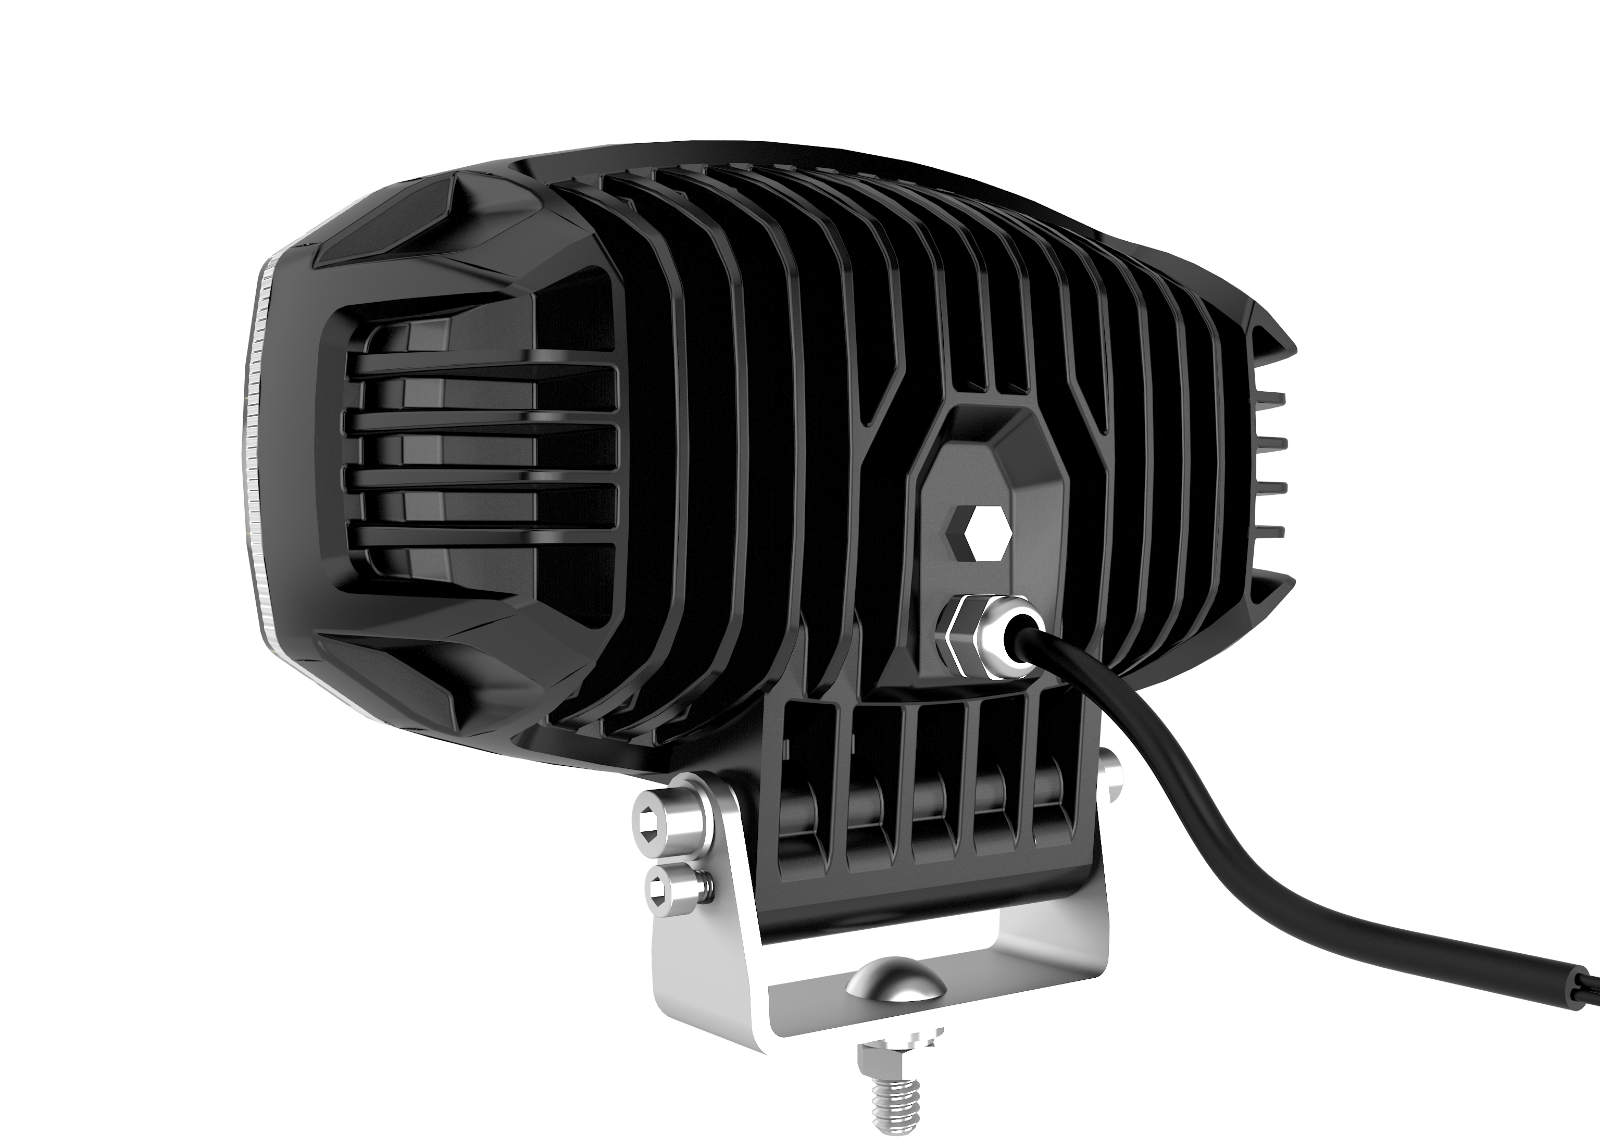 LED Правоъгълен Халоген за Тир, Камион – T150